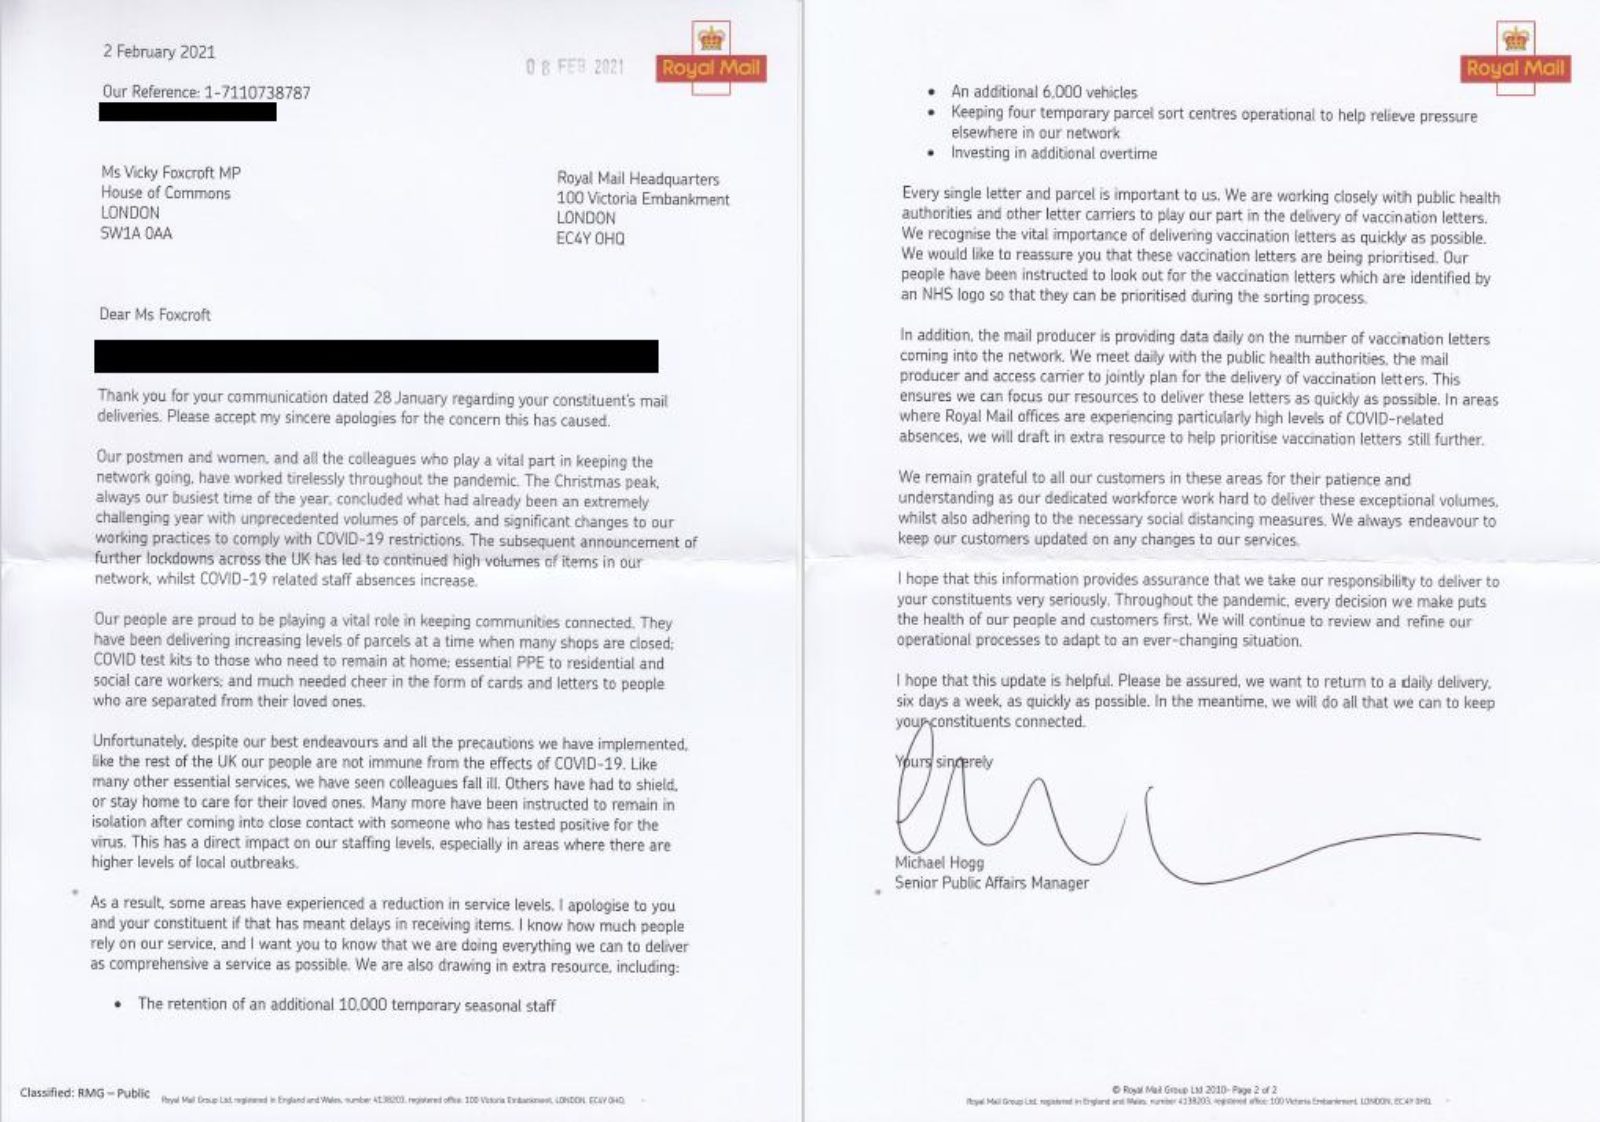 Letter from Royal Mail regarding postal services in Lewisham Deptford.